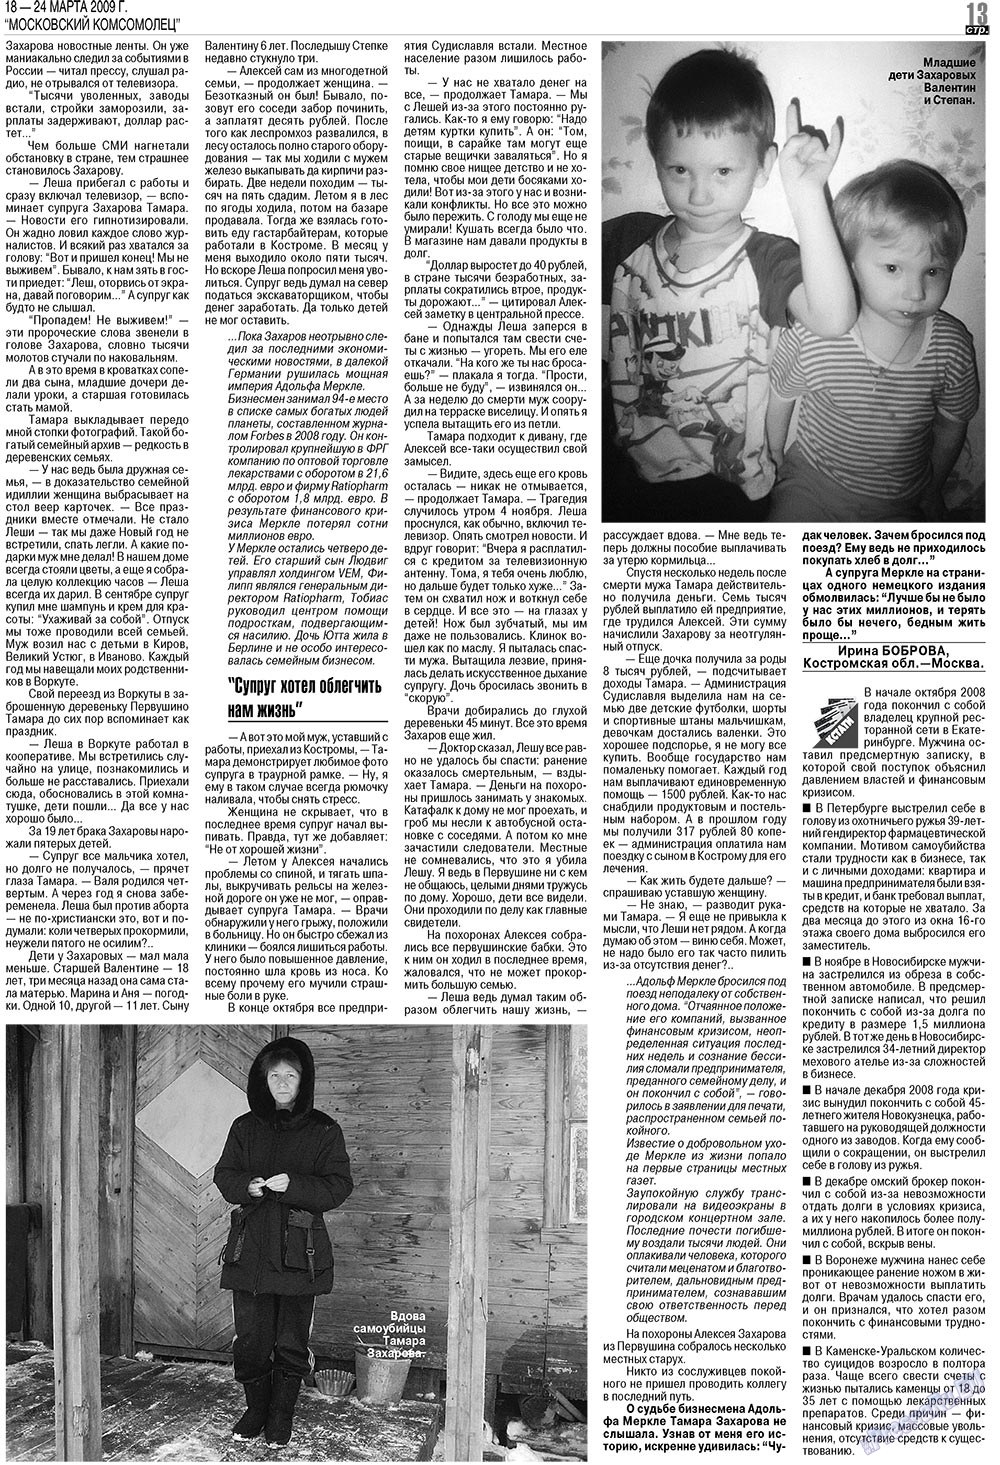 МК Испания, газета. 2009 №12 стр.13